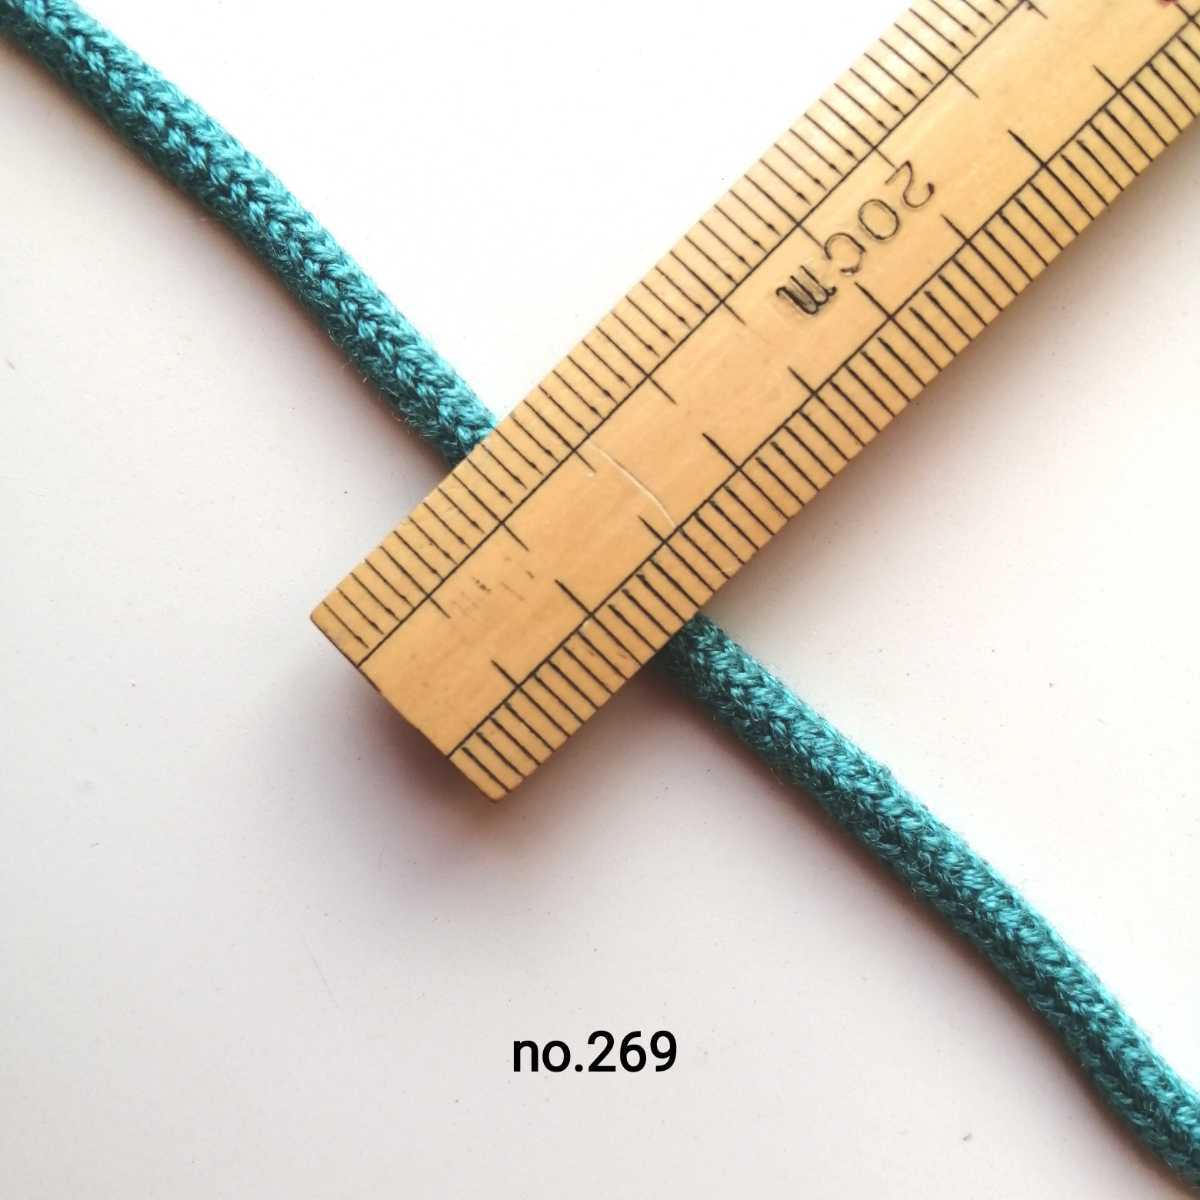 no.269 青緑 アクリルひも 長さ約2m 太さ約3mm アクリルコード 服飾資材 量り売り カラーヒモ 太い紐 ヒモ